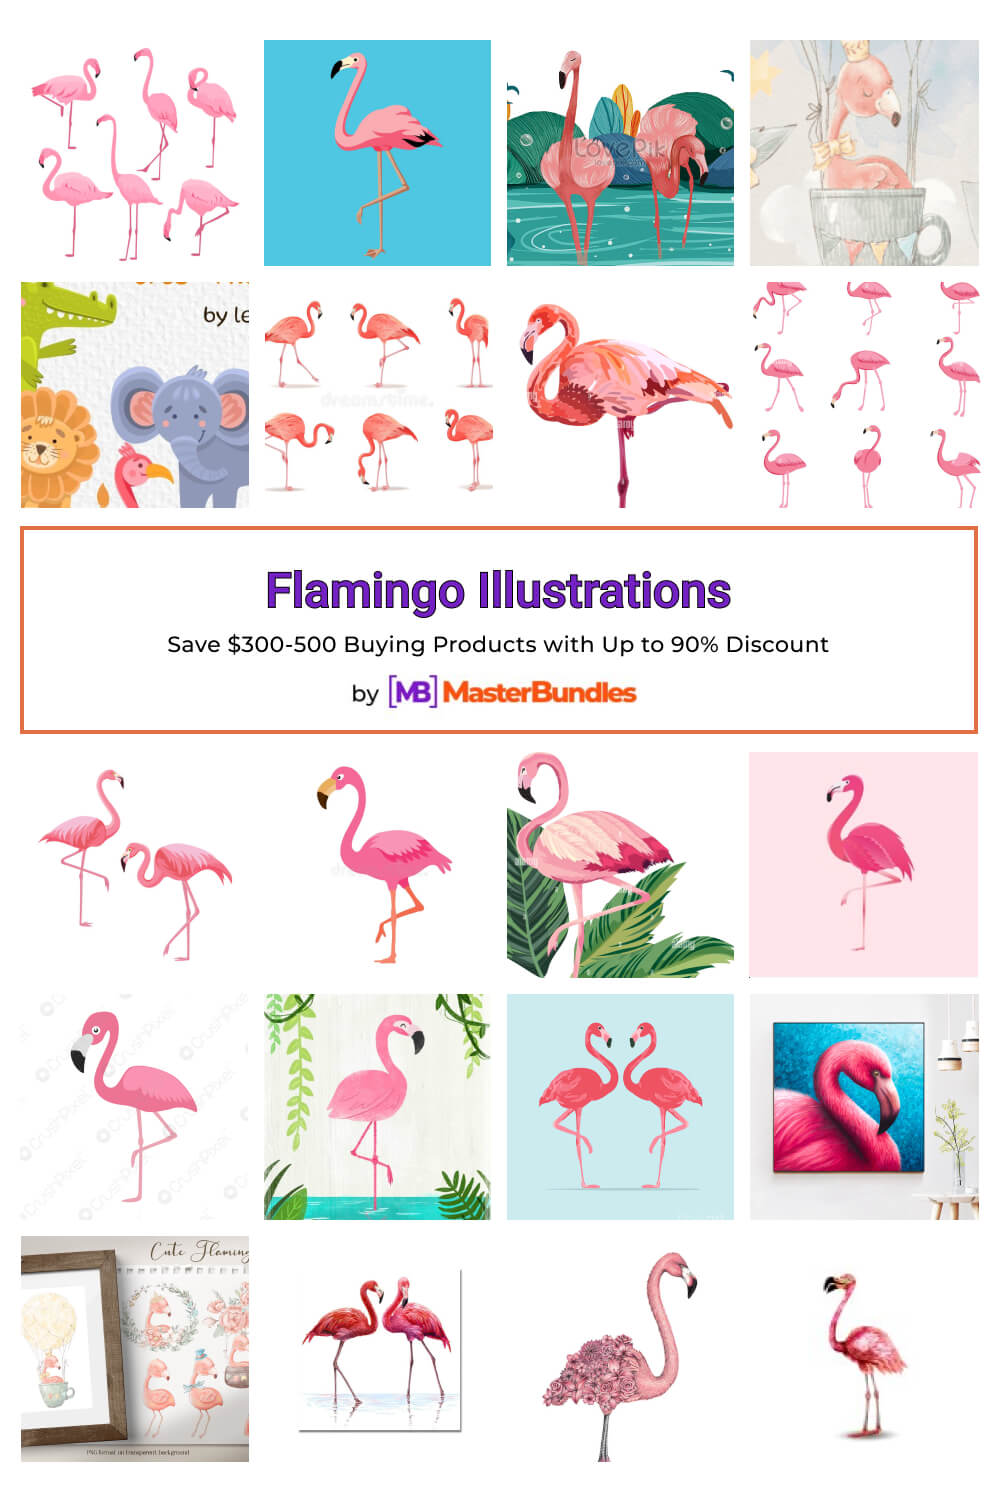 flamingo illustrations pinterest image.